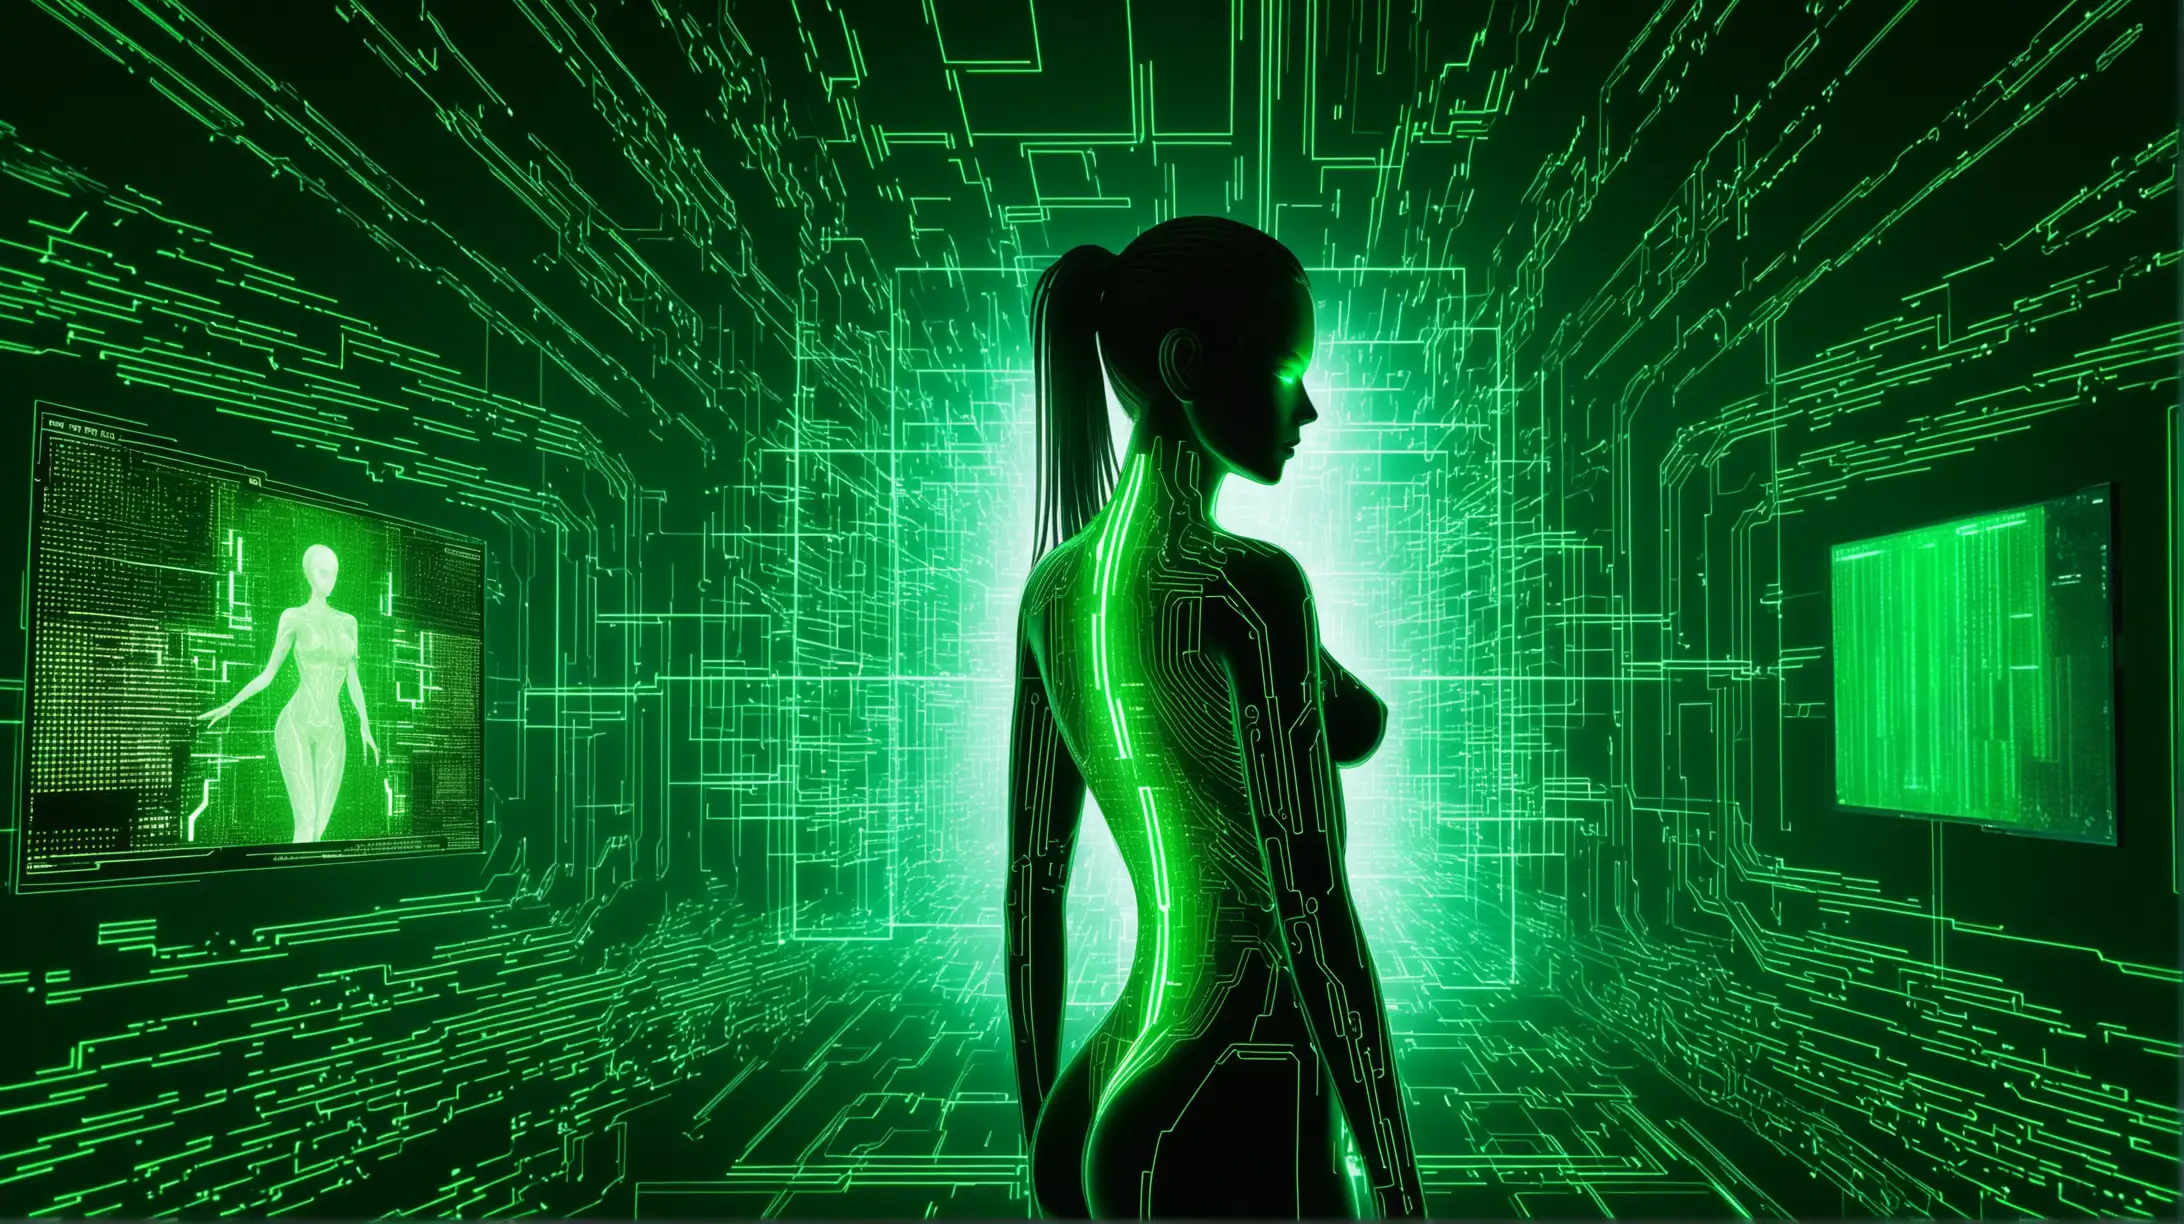 Futuristic Cyberpunk Woman in Matrix Code